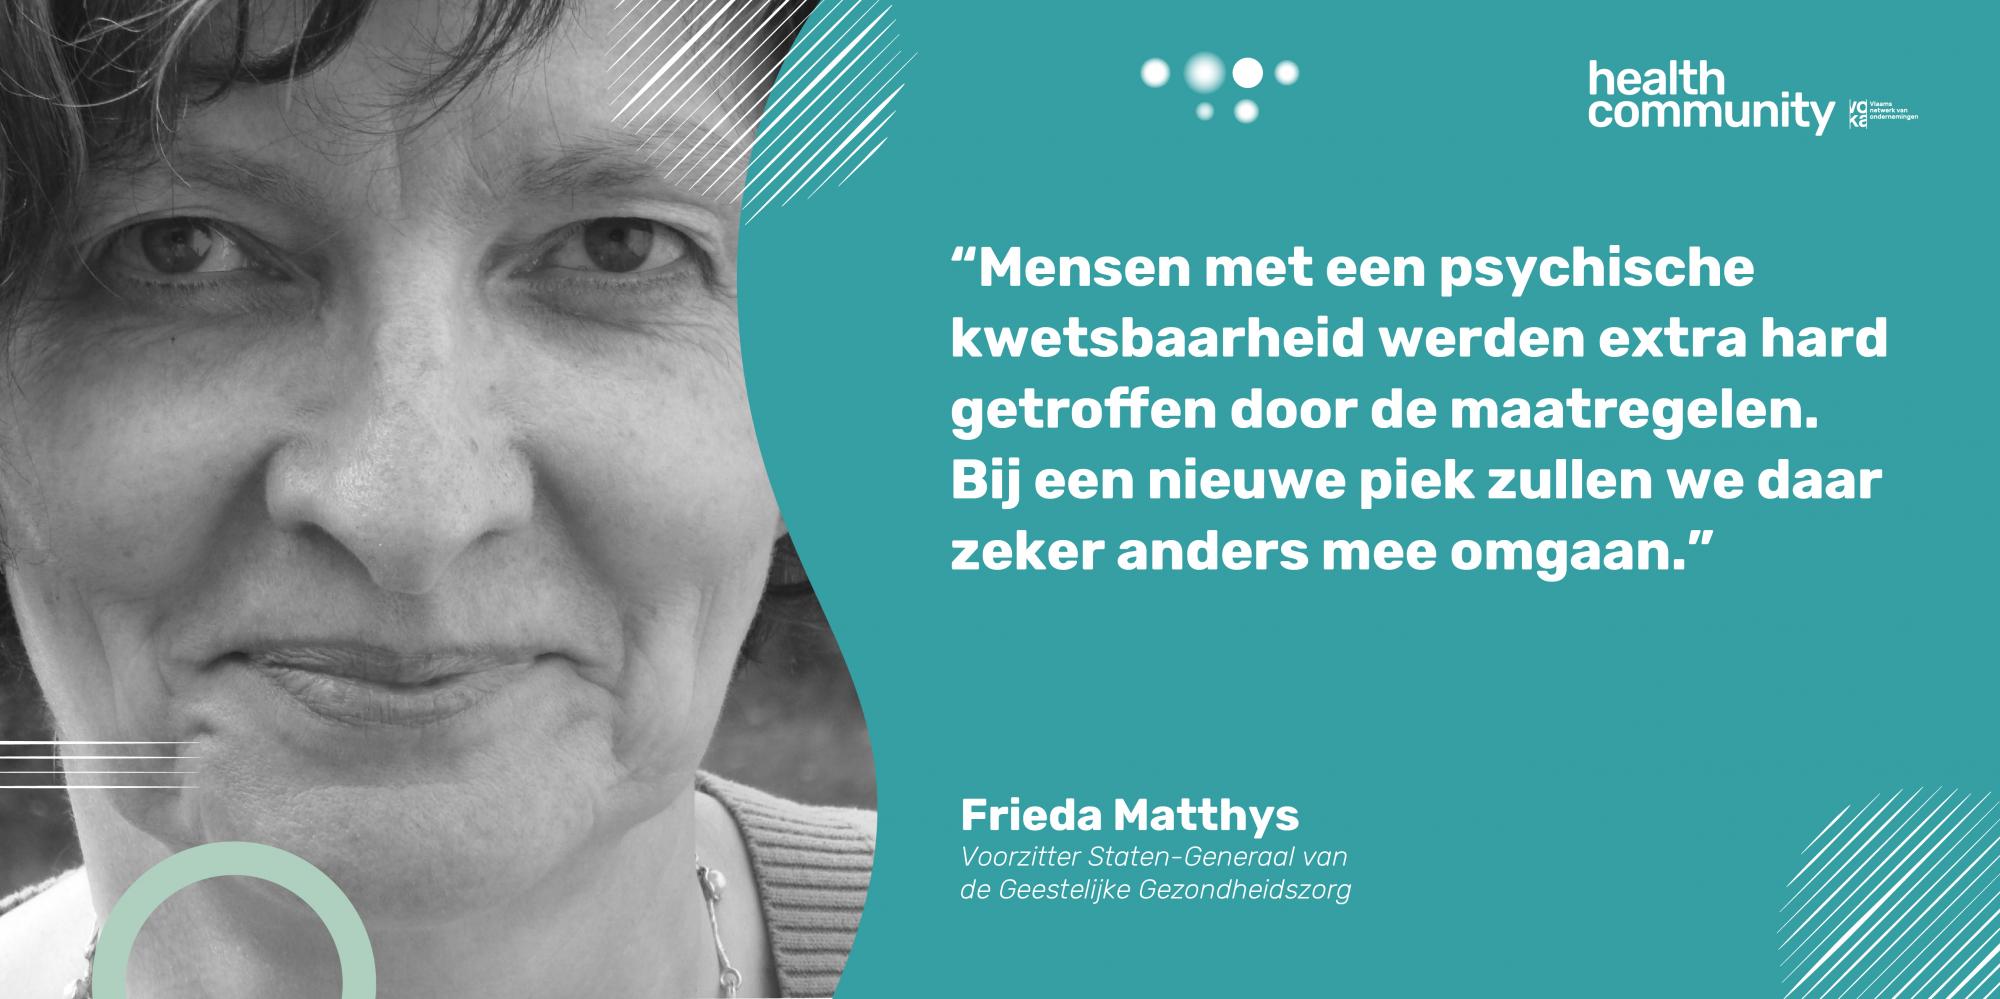 Frieda Matthys